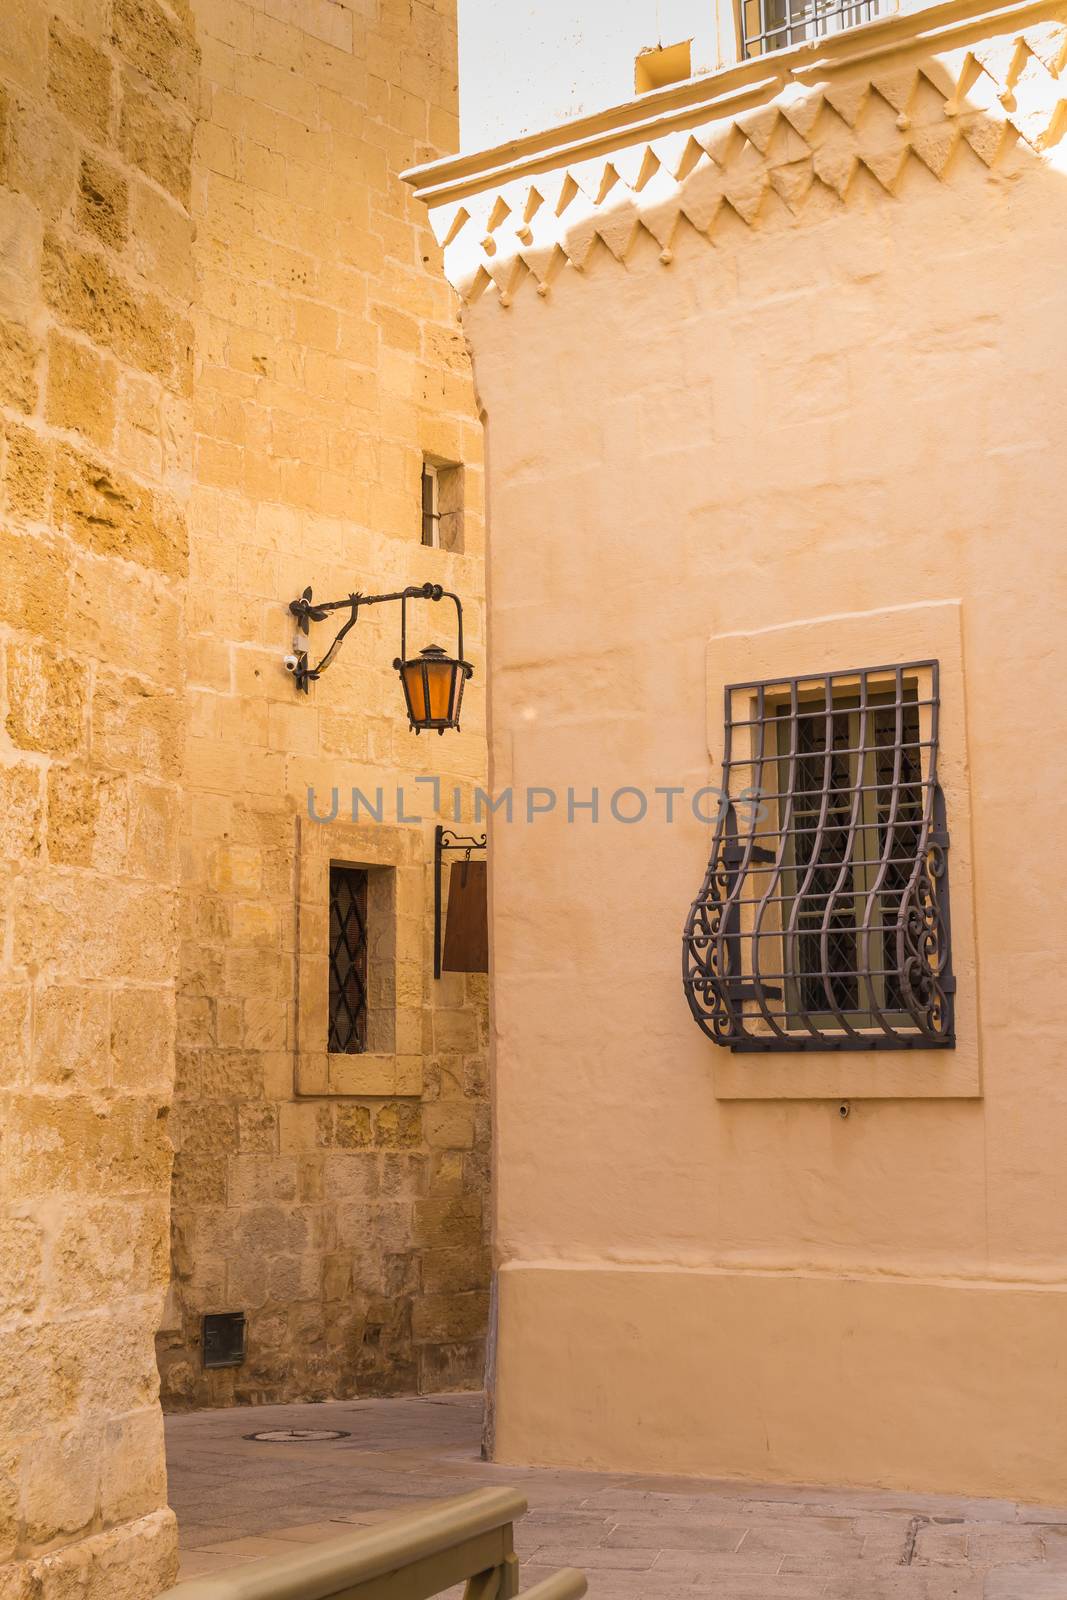 Narrow streets of Mdina, island Malta by YassminPhoto